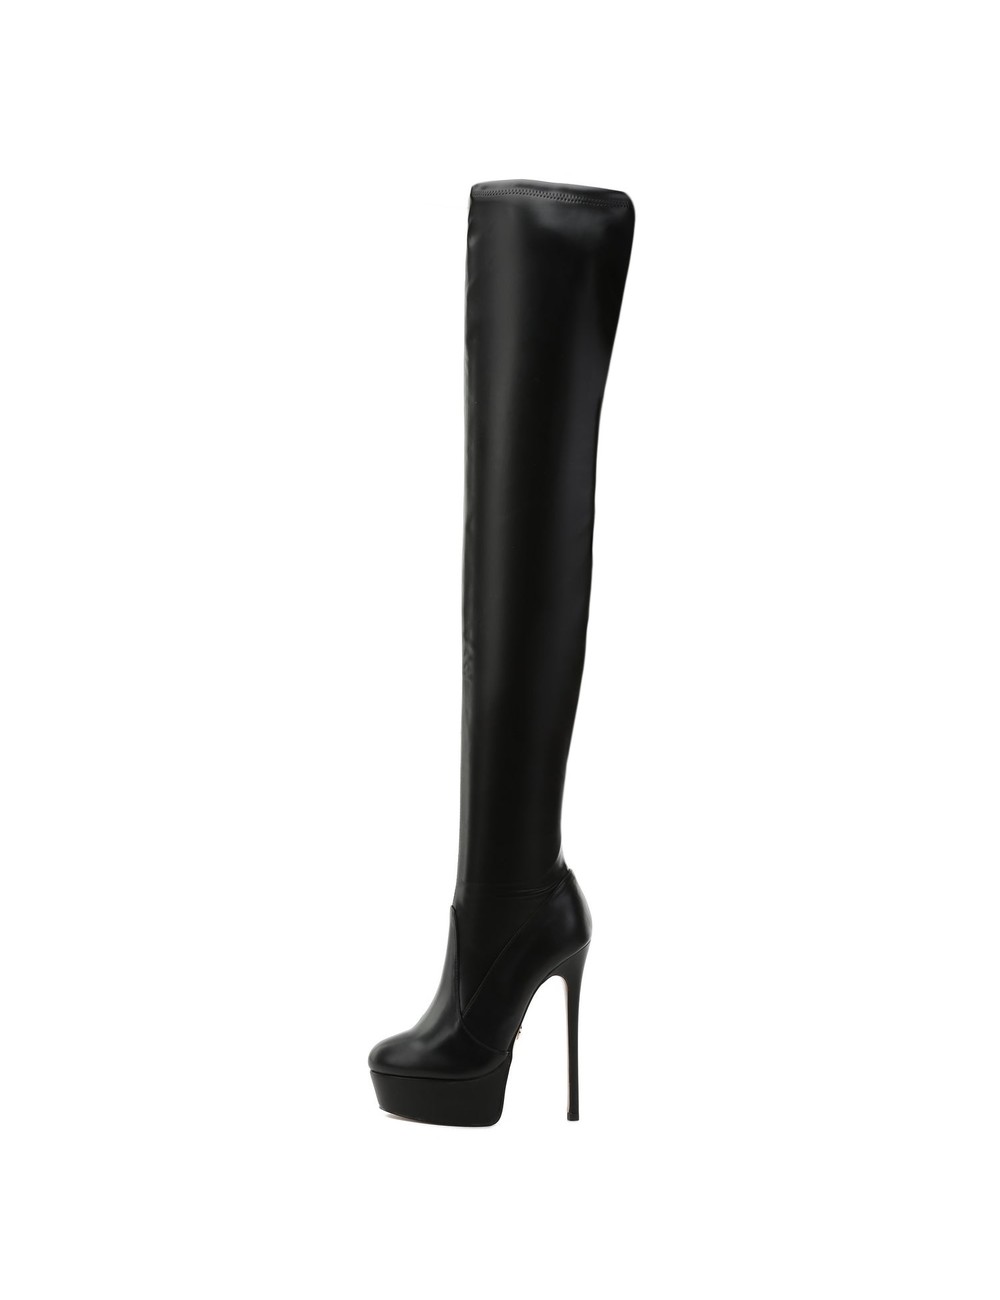 Giaro SUTTON BLACK MATTE - Shoebidoo Shoes | Giaro high heels